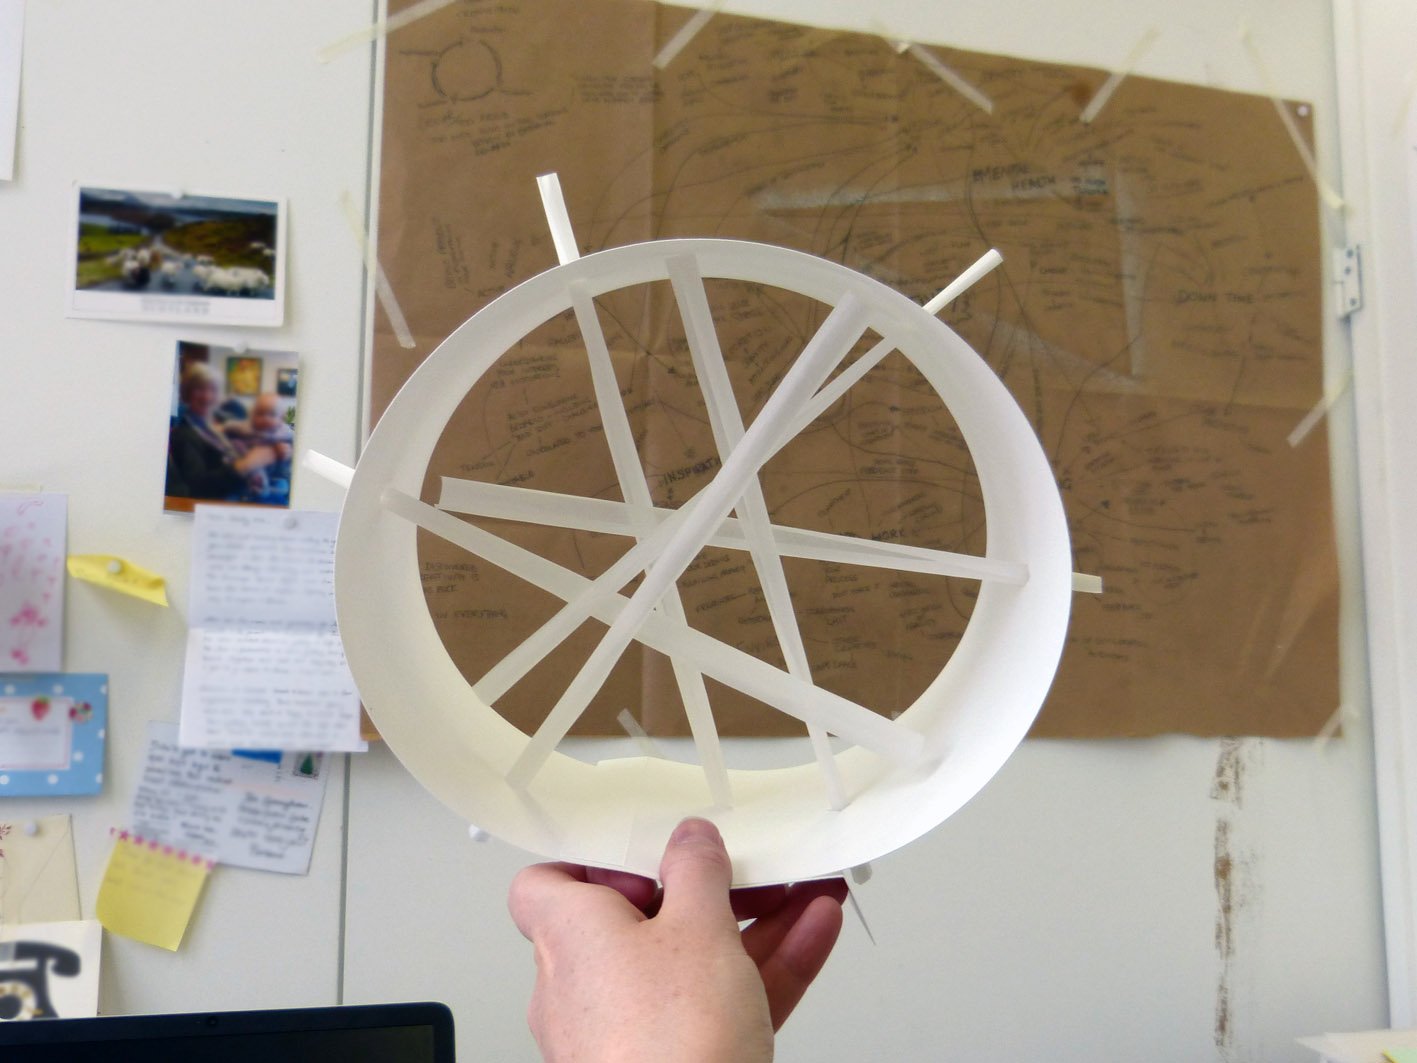 Sculpture-1-rigid-paper-through-tube.jpg